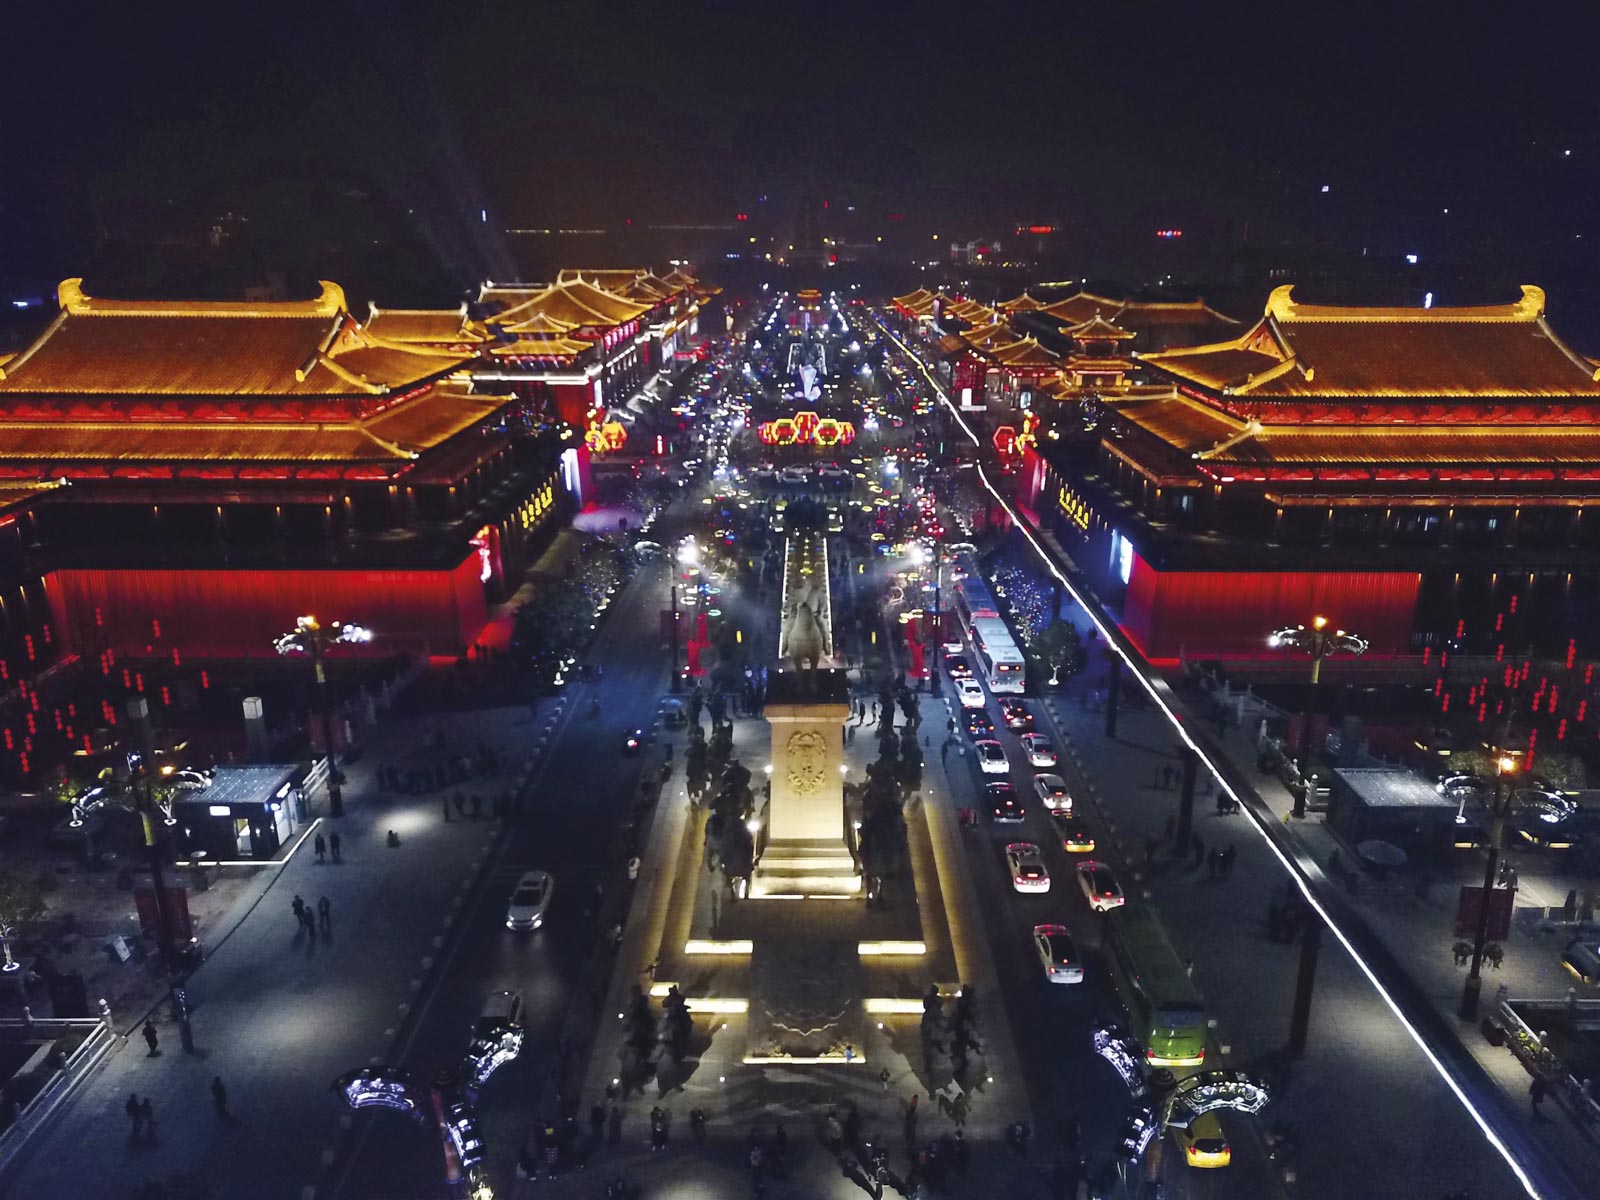 Qujiang New District, Xi’an, China